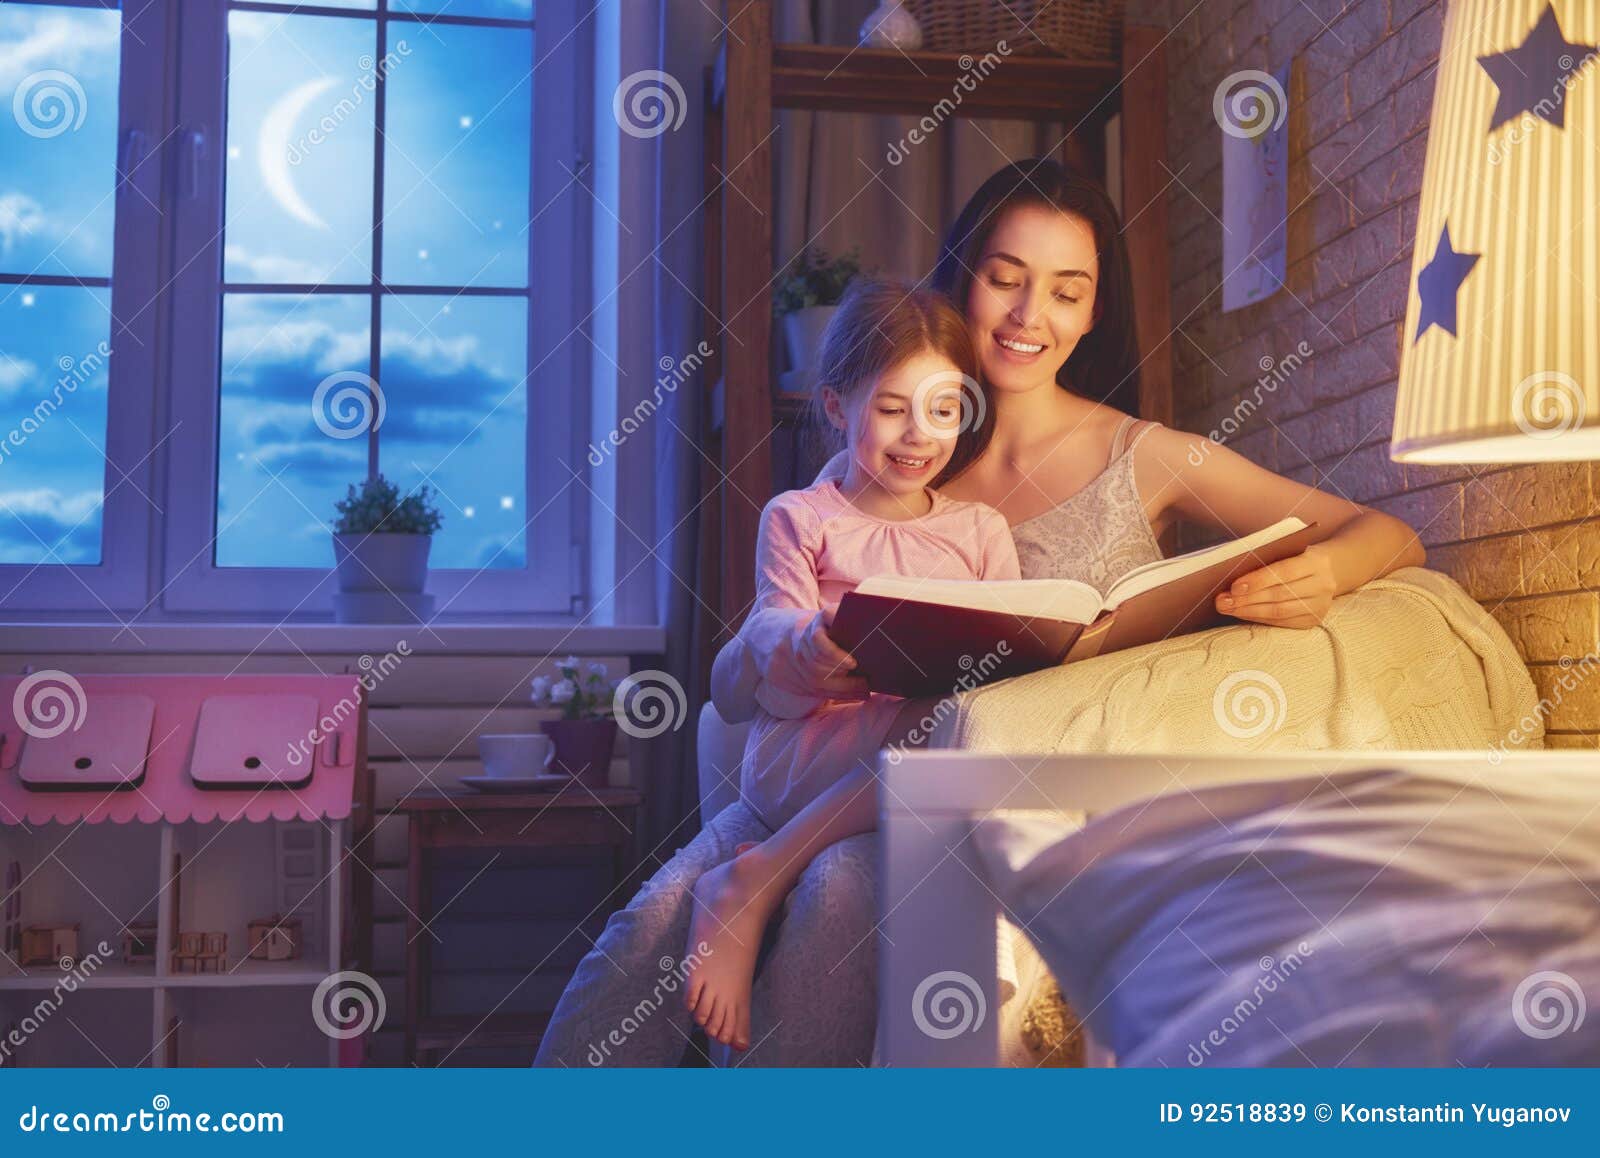 family reading bedtime.